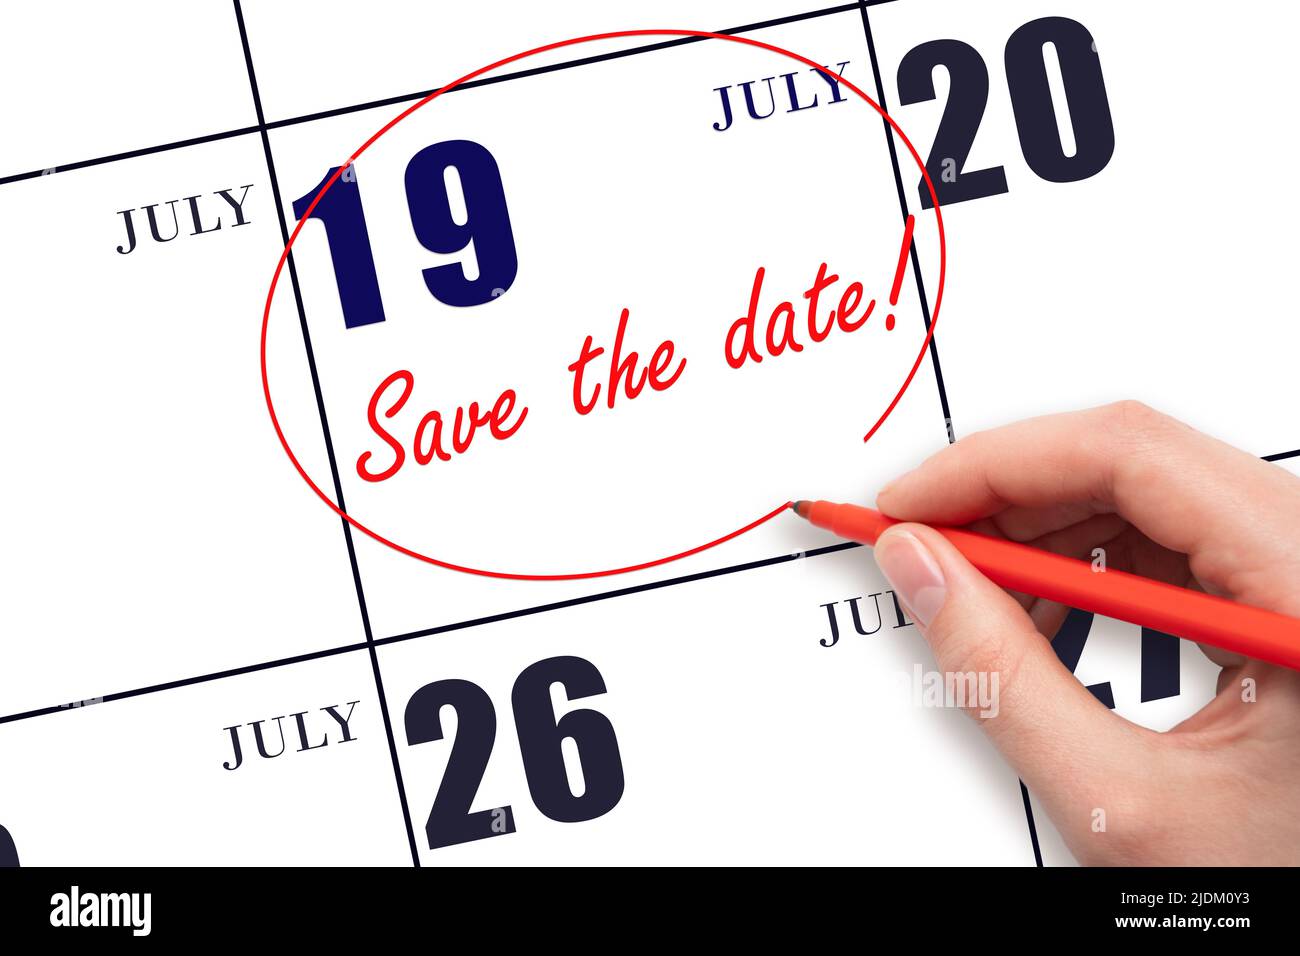 19th giorno di luglio. Disegno a mano linea rossa e scrittura del testo Salva la data del calendario 19 luglio. Mese estivo, giorno dell'anno concetto. Foto Stock